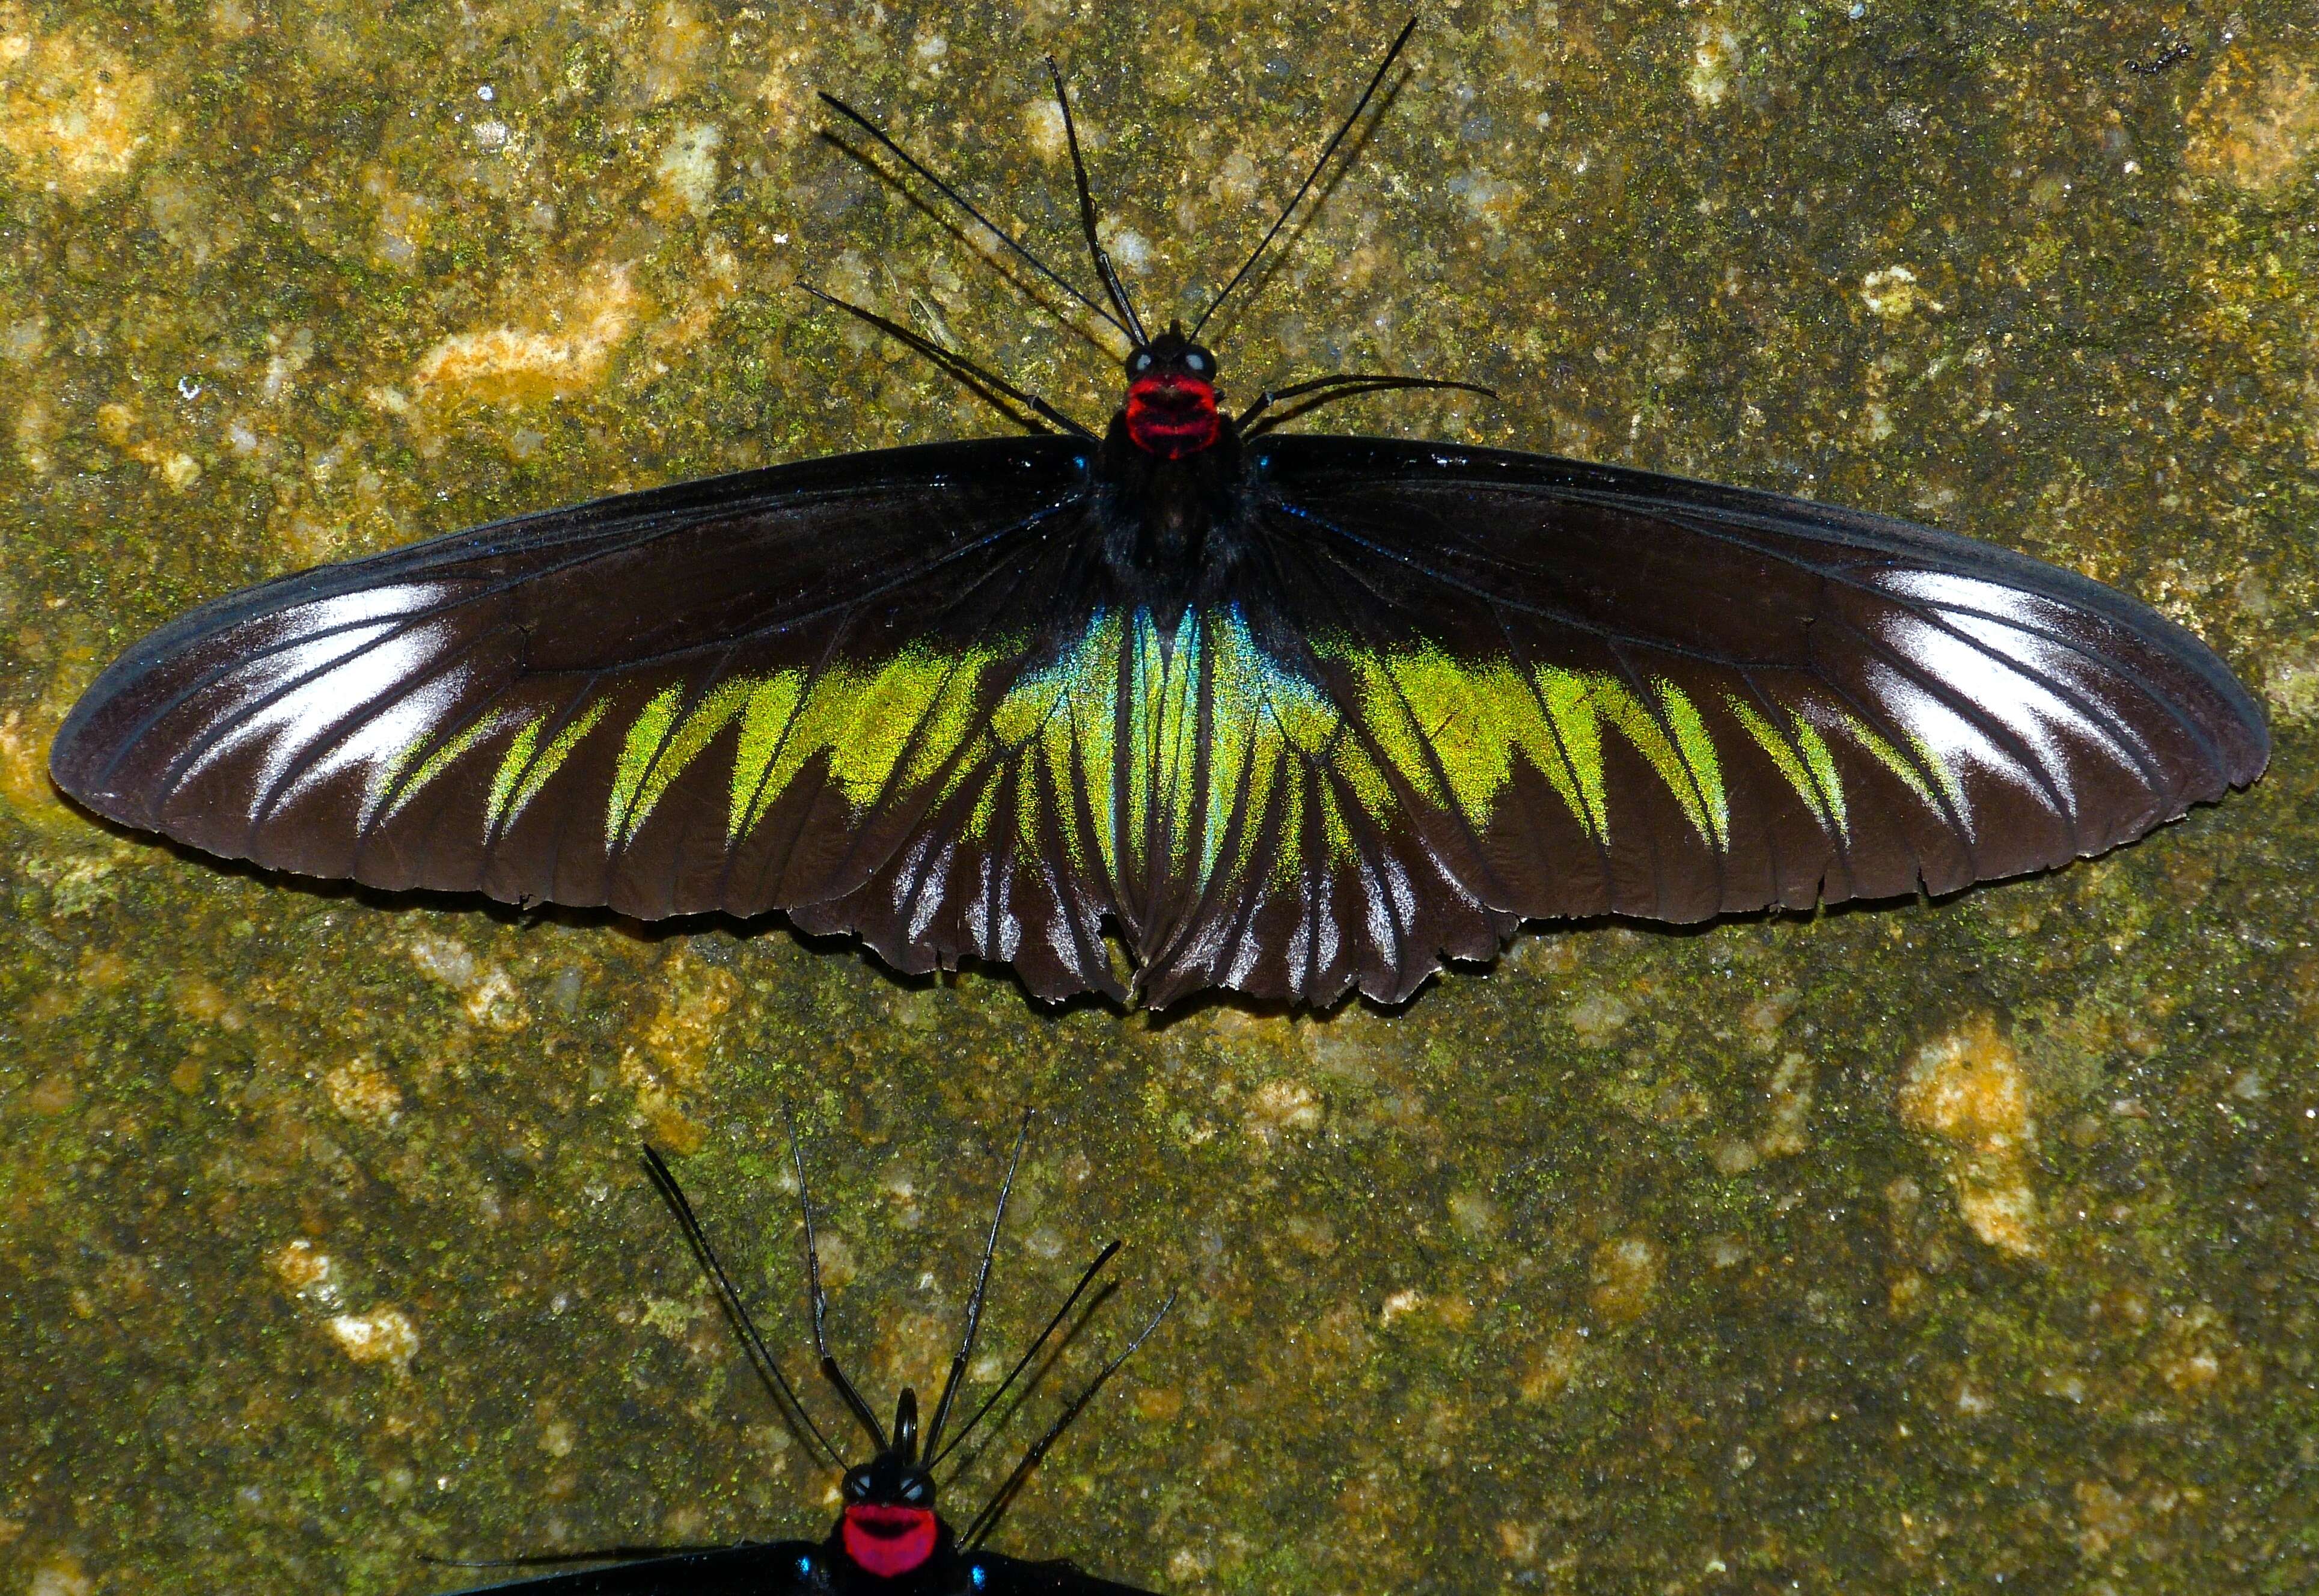 Image of Papilioninae